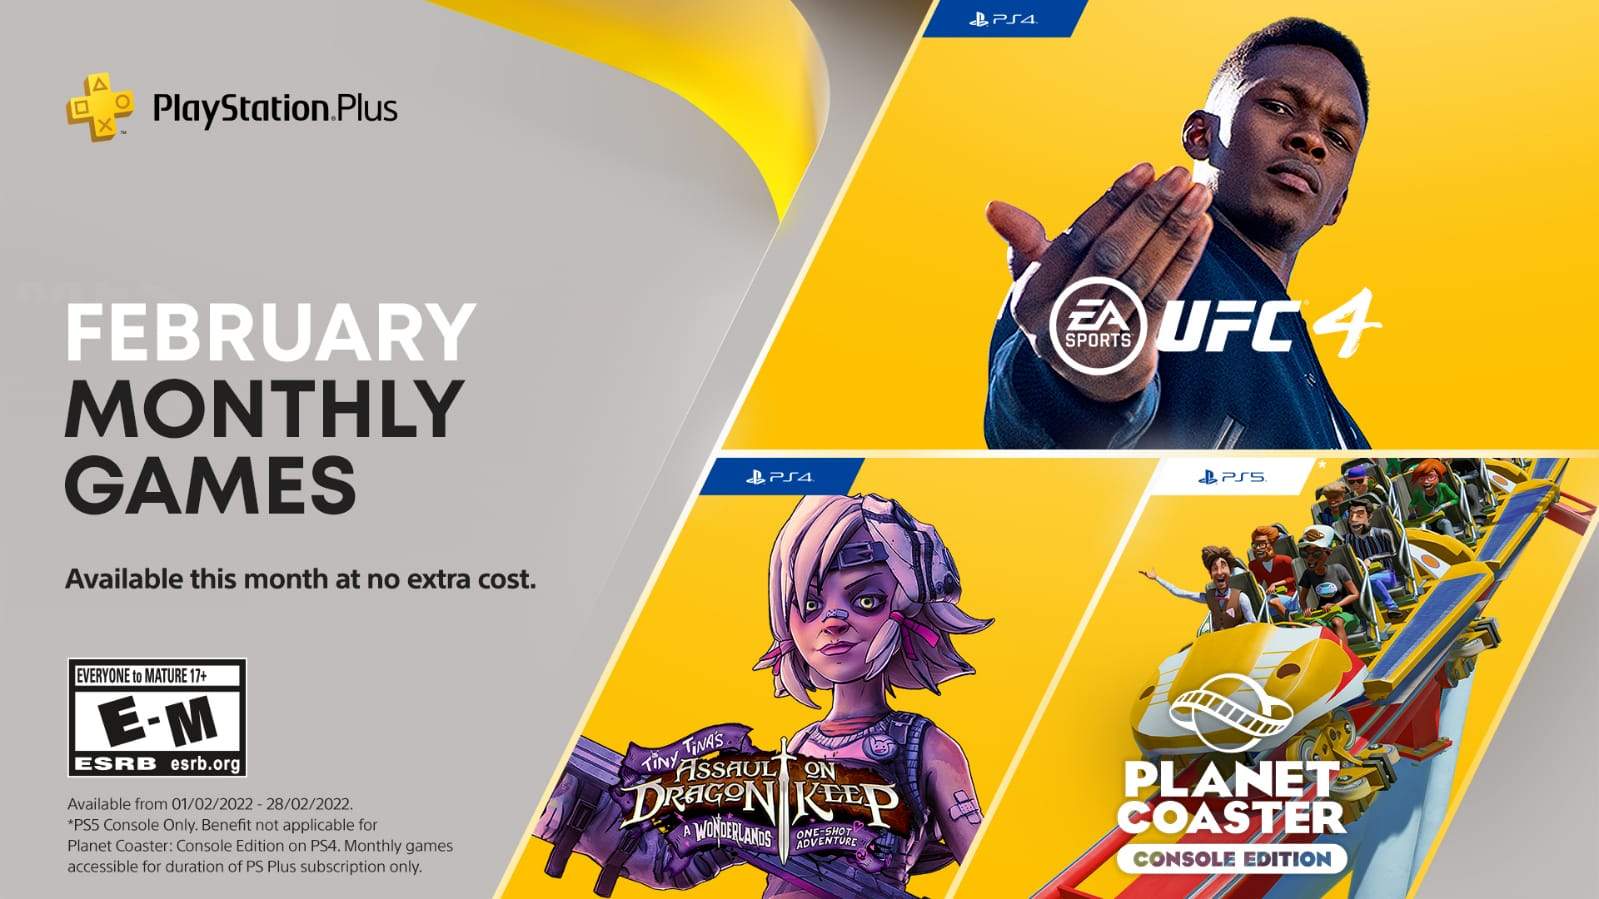 Análise: Novo PlayStation Plus traz um catálogo recheado de jogos